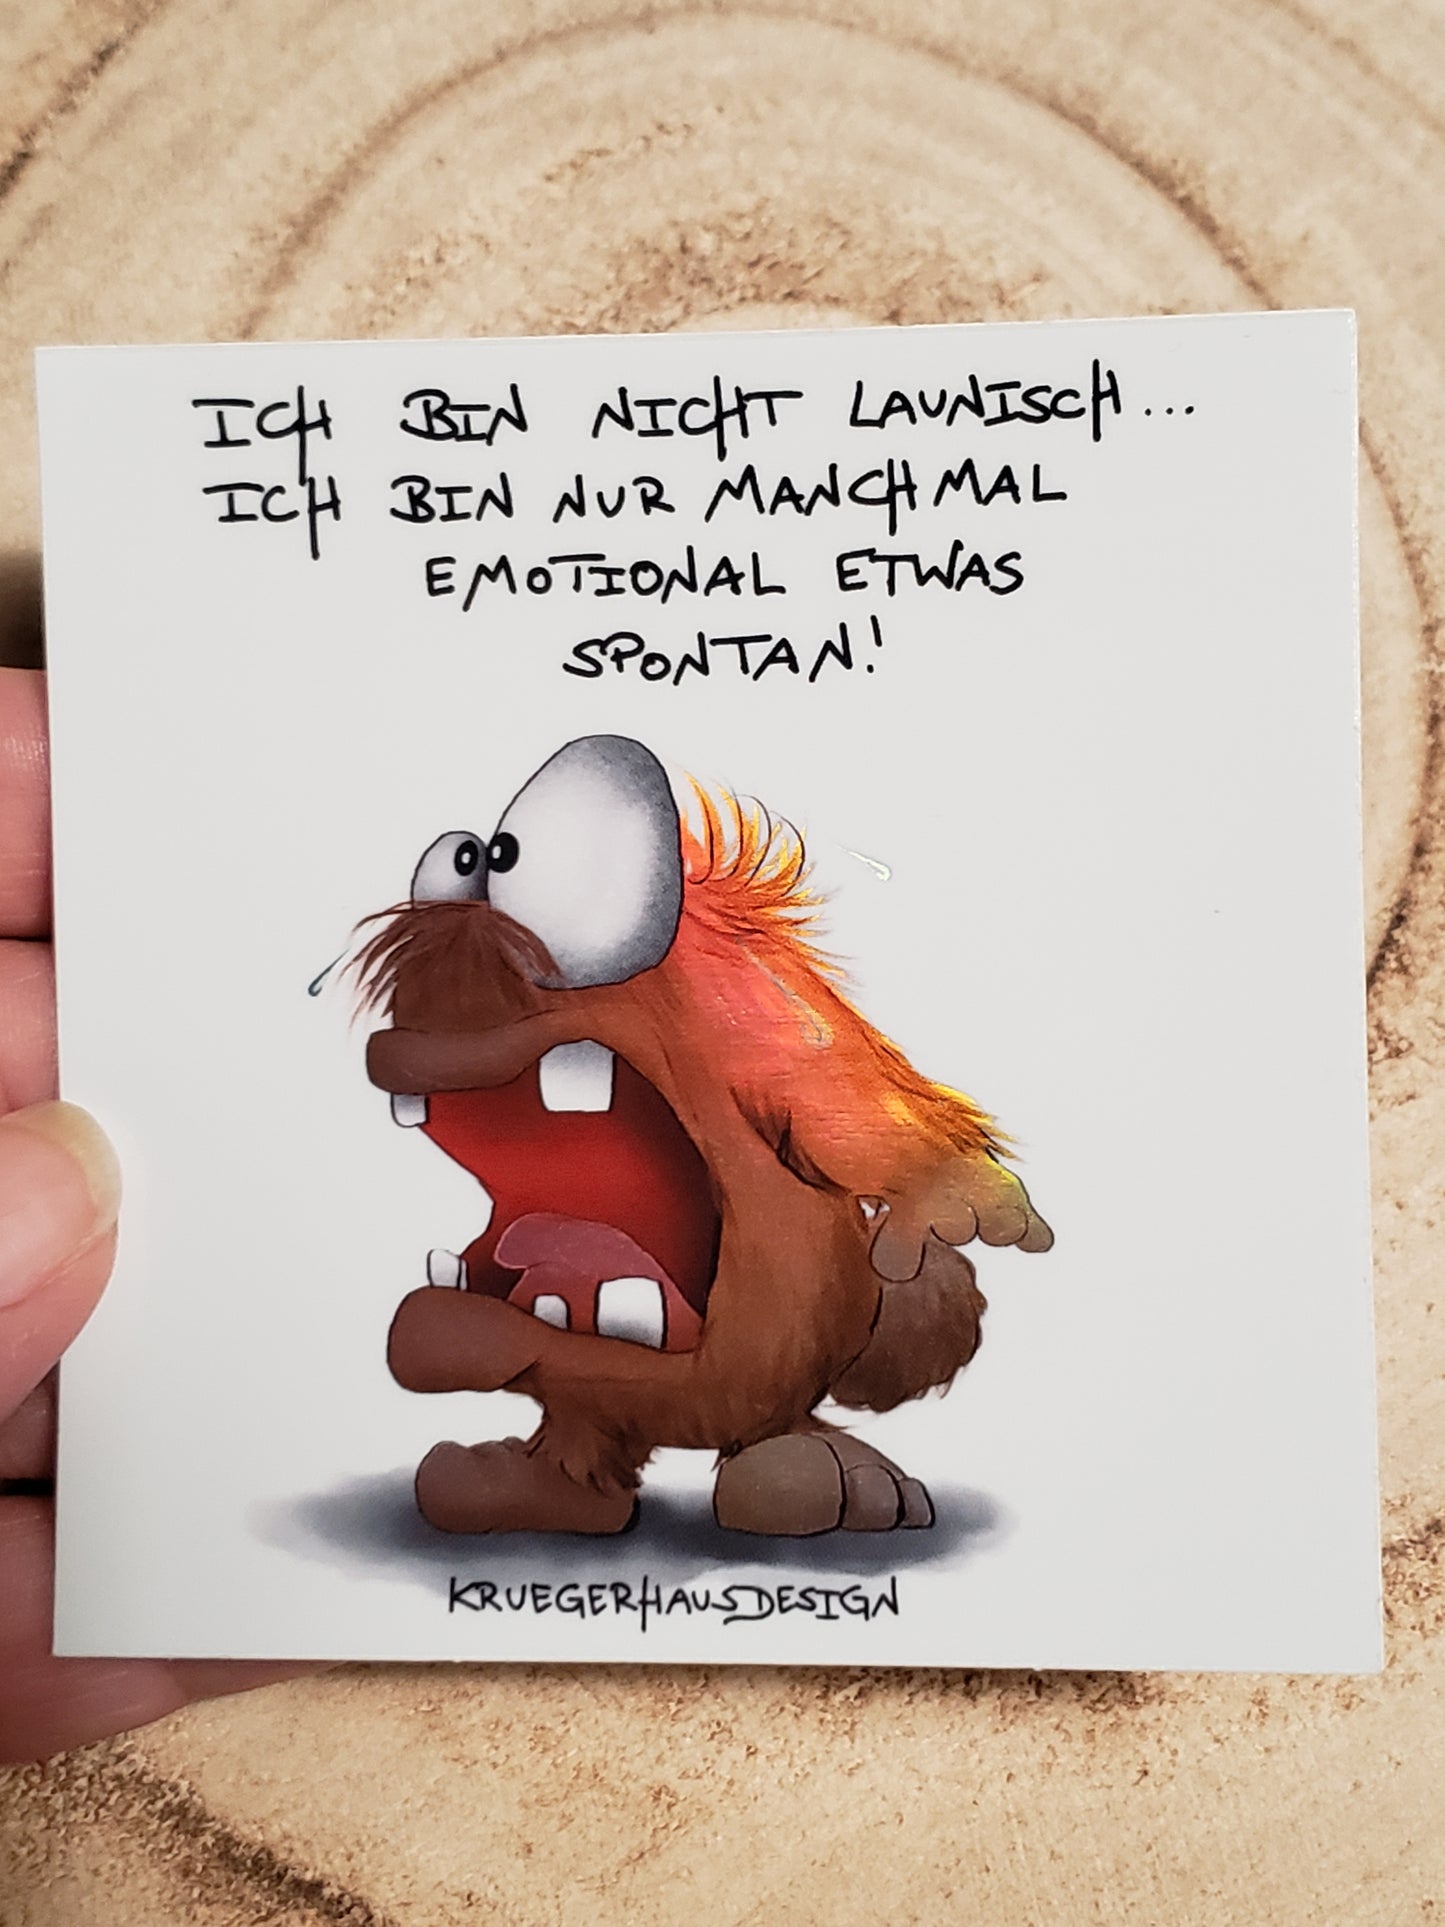 Sticker Hologram Kruegerhausdesign mit Monster und Spruch "Ich bin nicht launisch..."